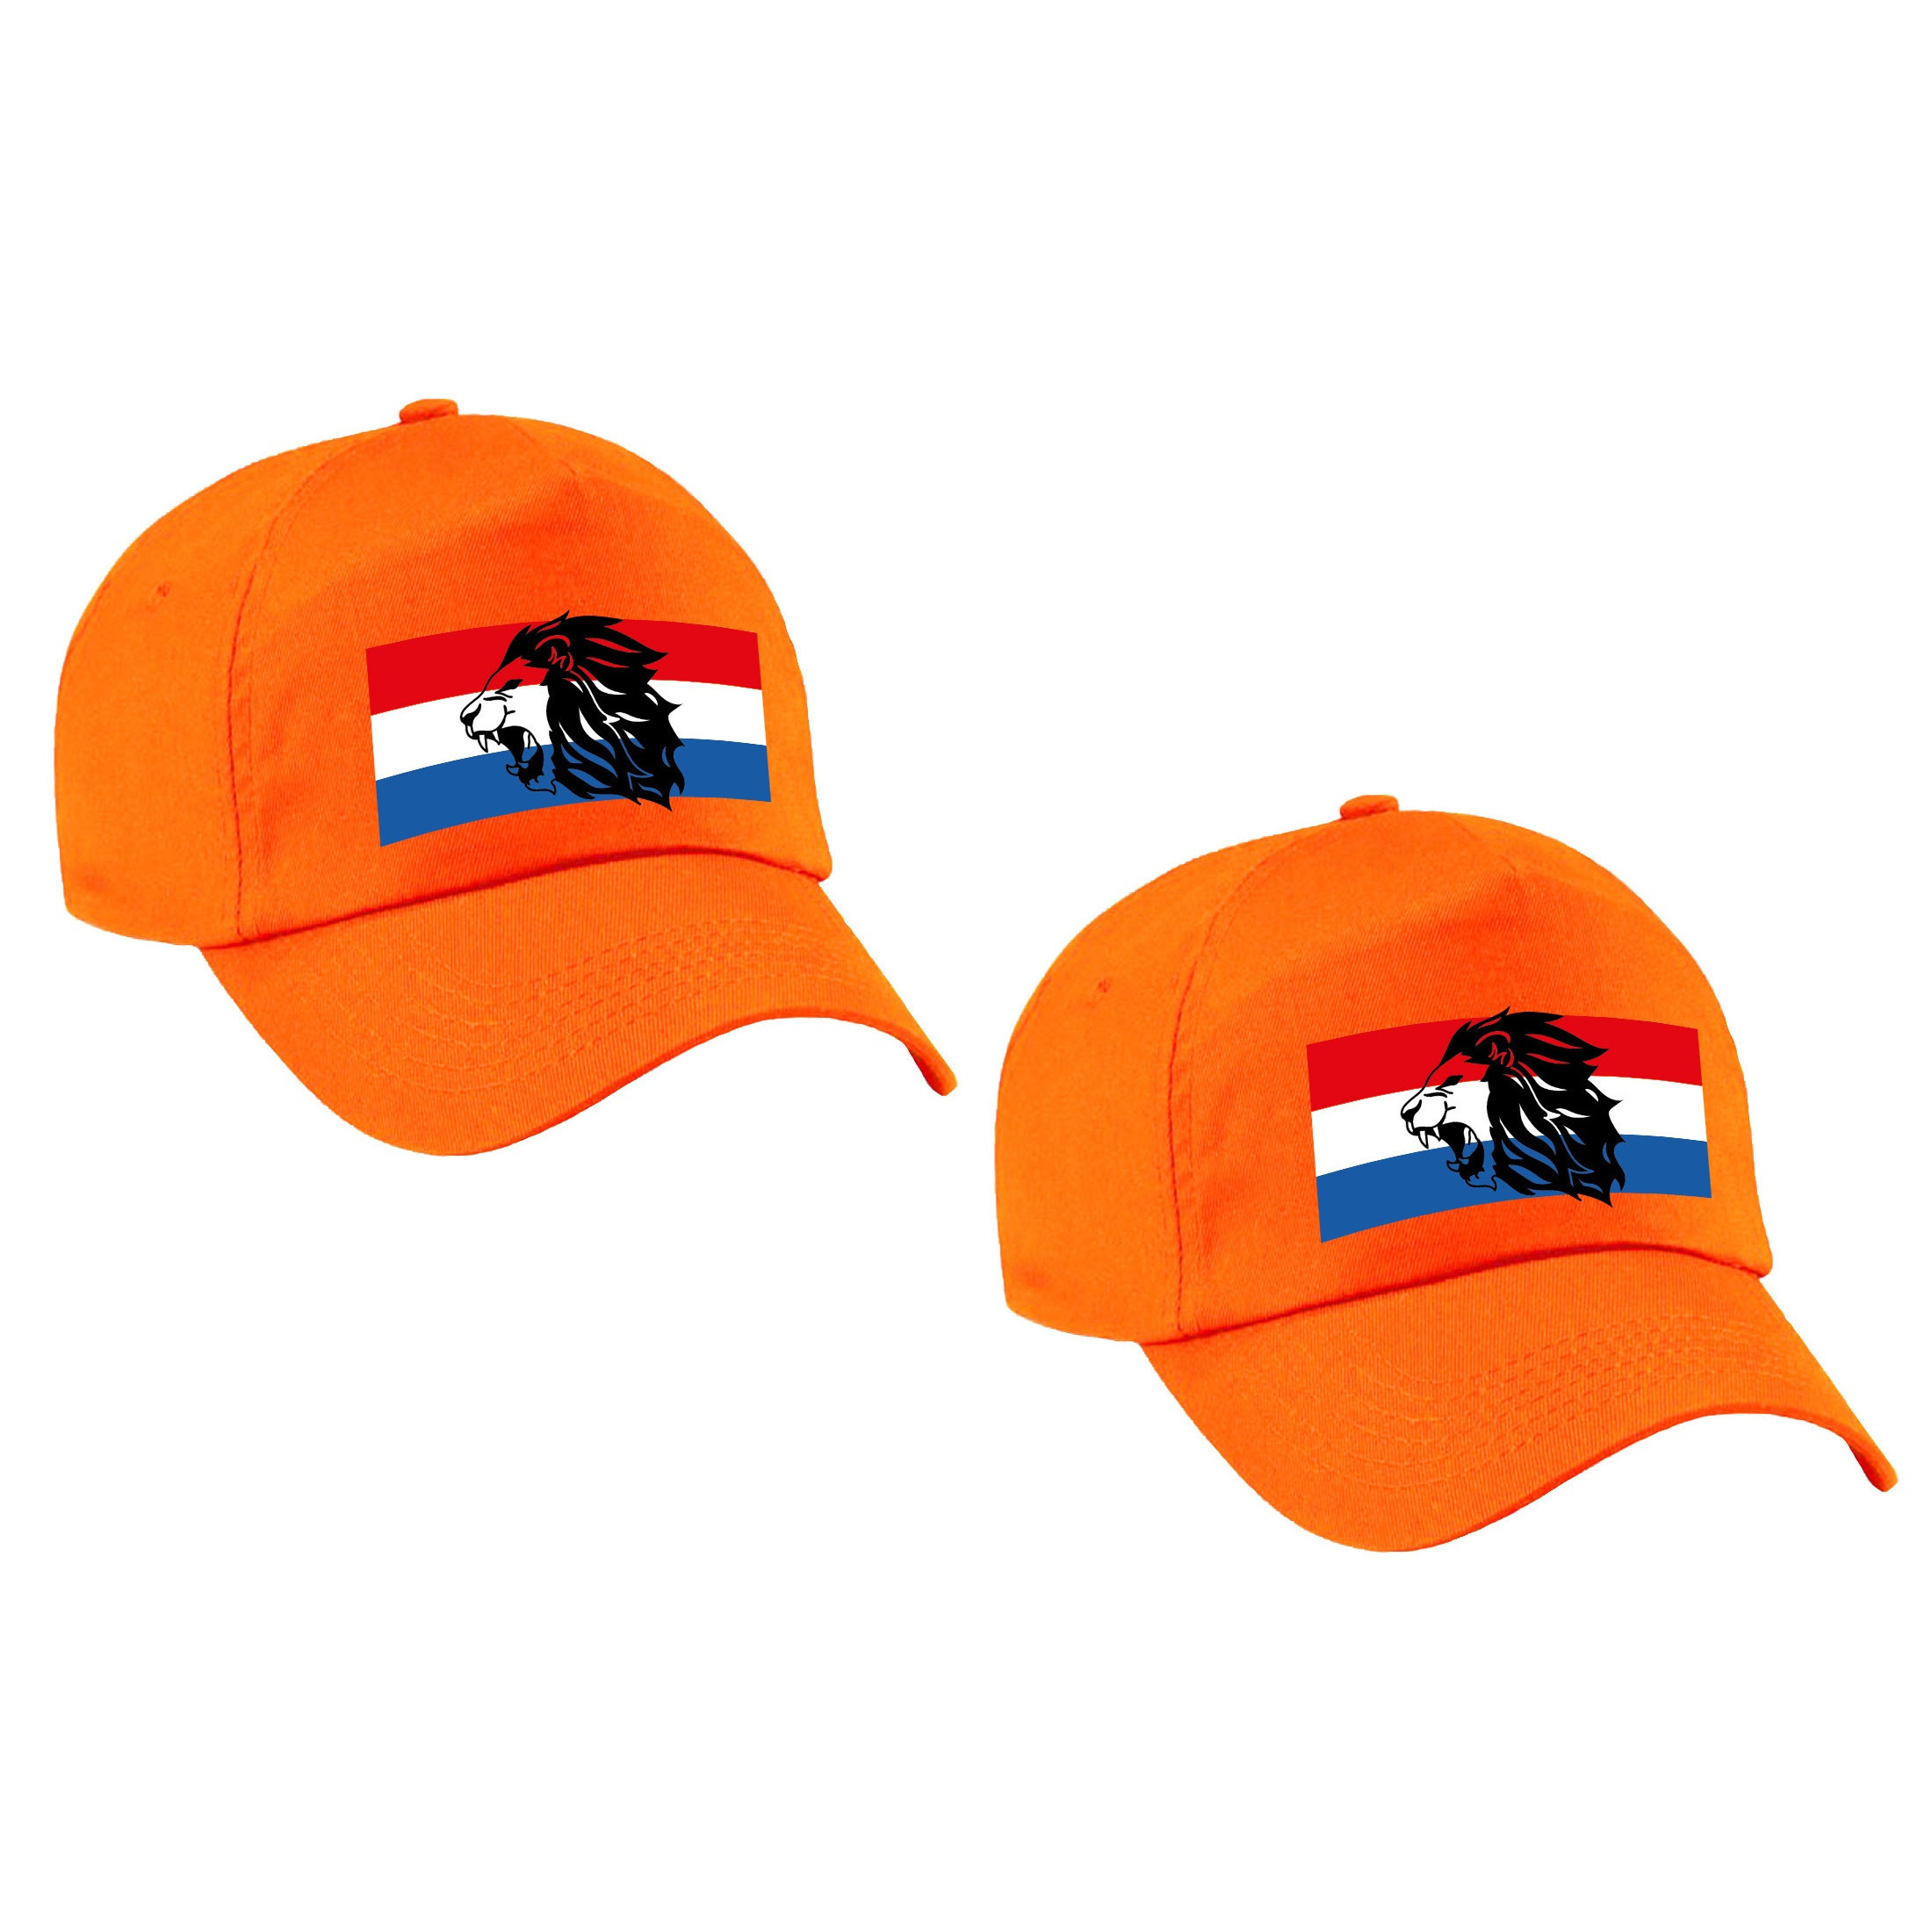 4x stuks holland supporter pet - cap met de oranje leeuw en Nederlandse vlag - EK - WK voor volwasse